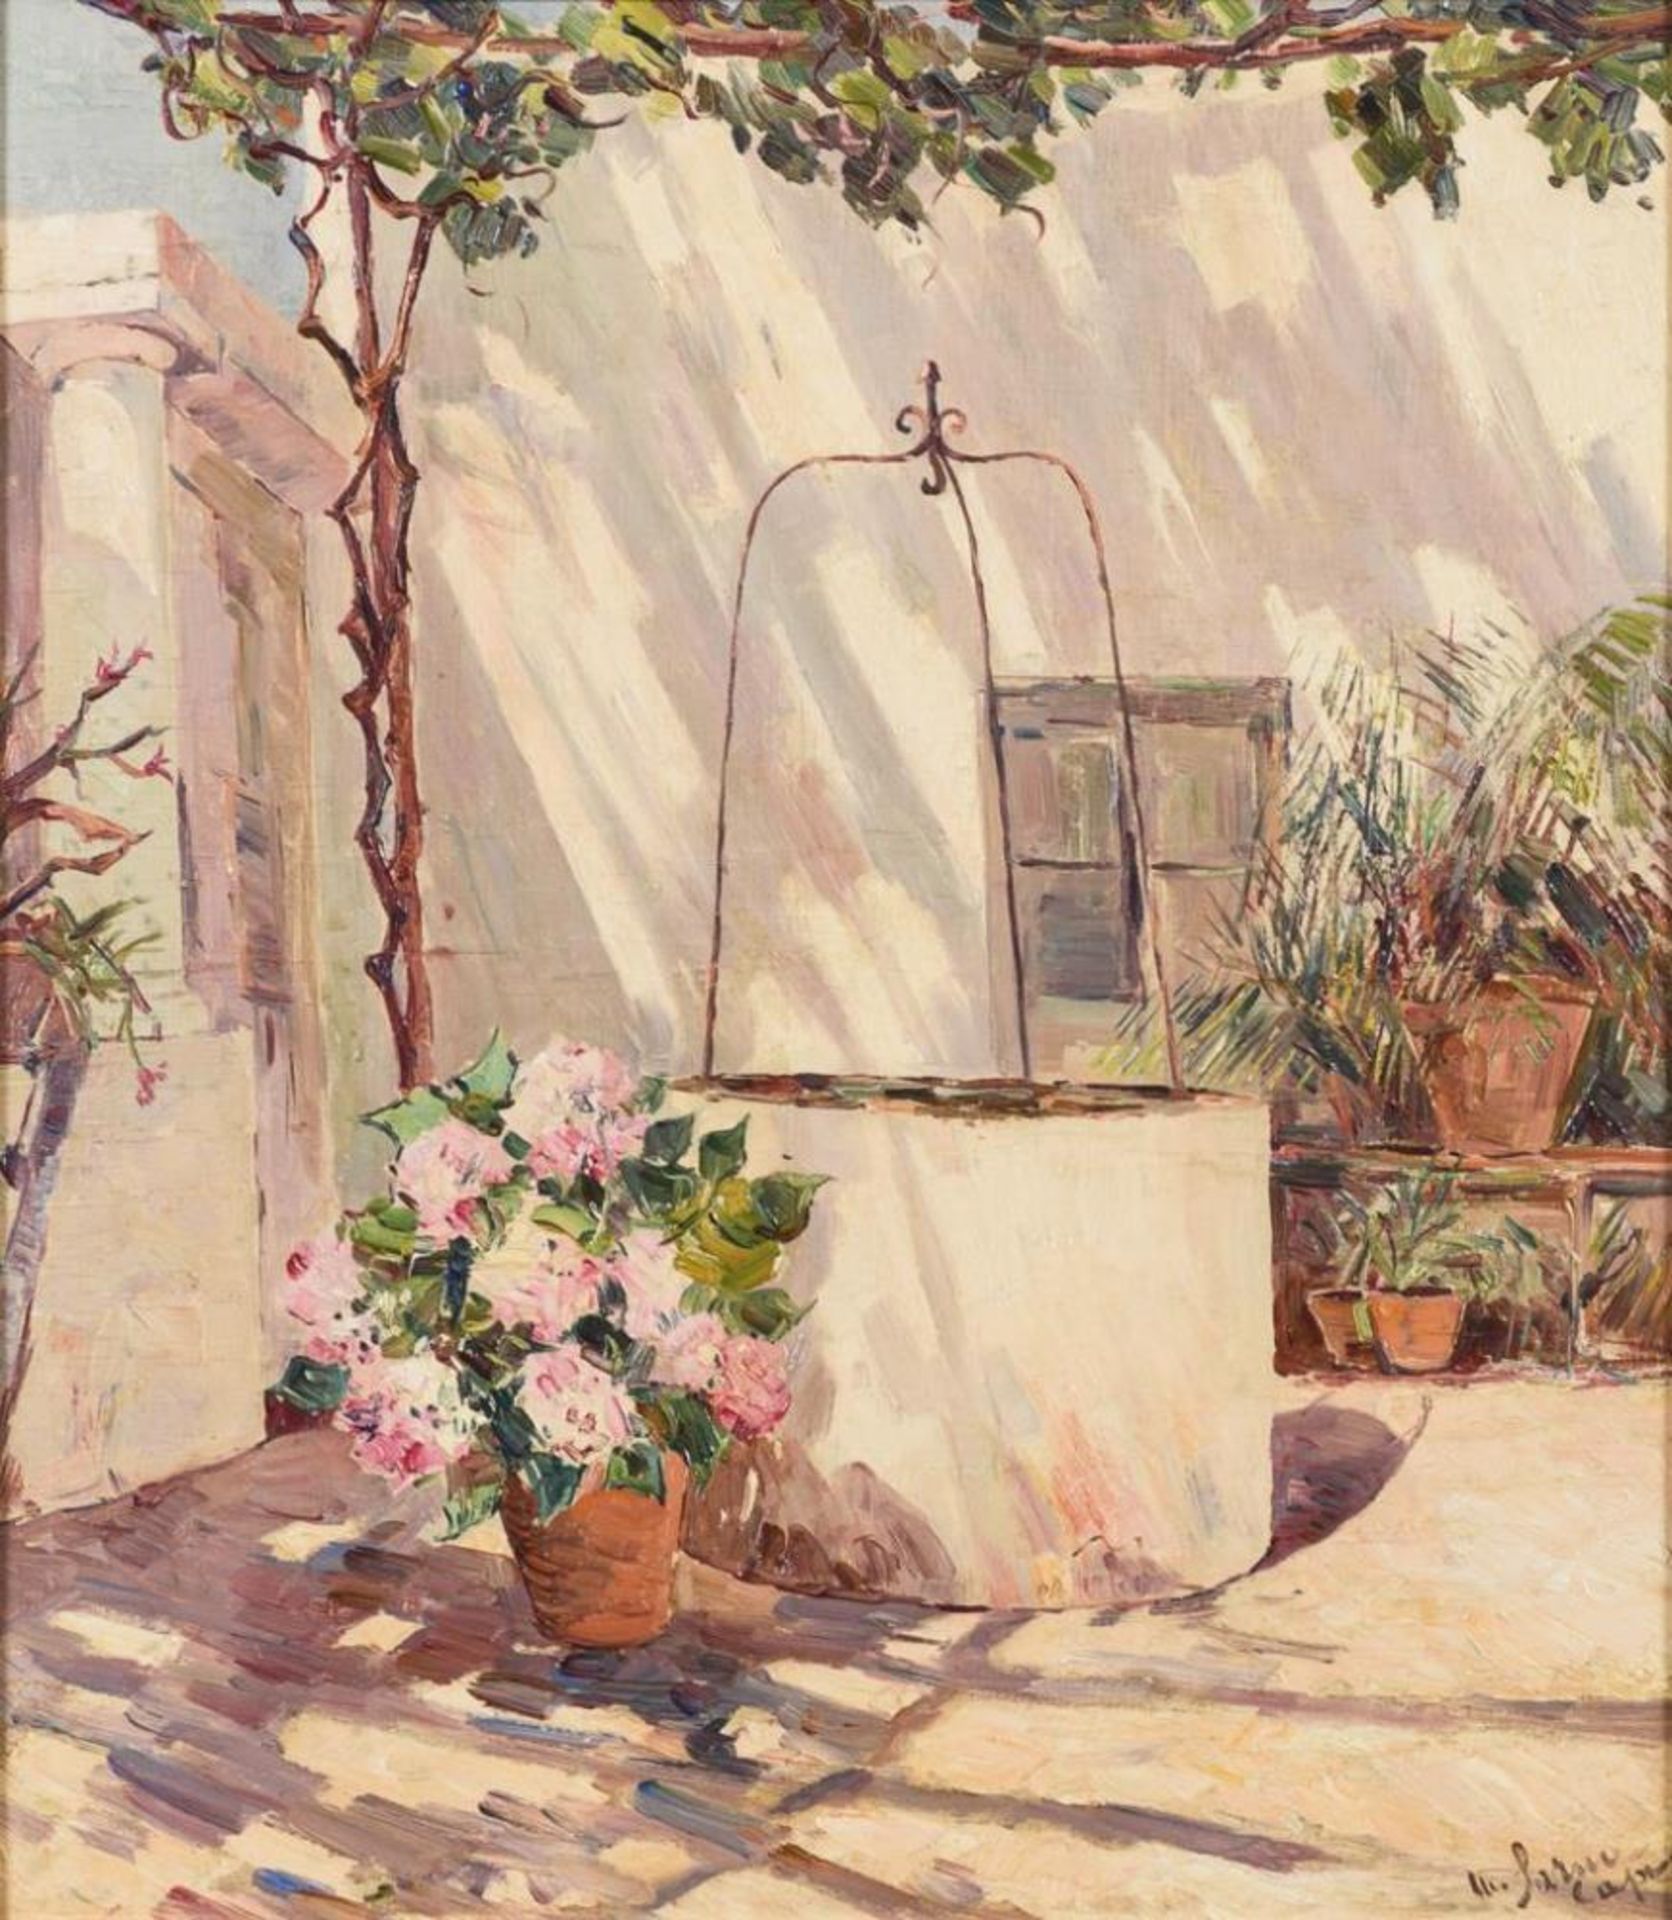 SARNO, Matteo (1894 Ischia - 1957 Ischia). Sonnige Terrasse auf Capri.